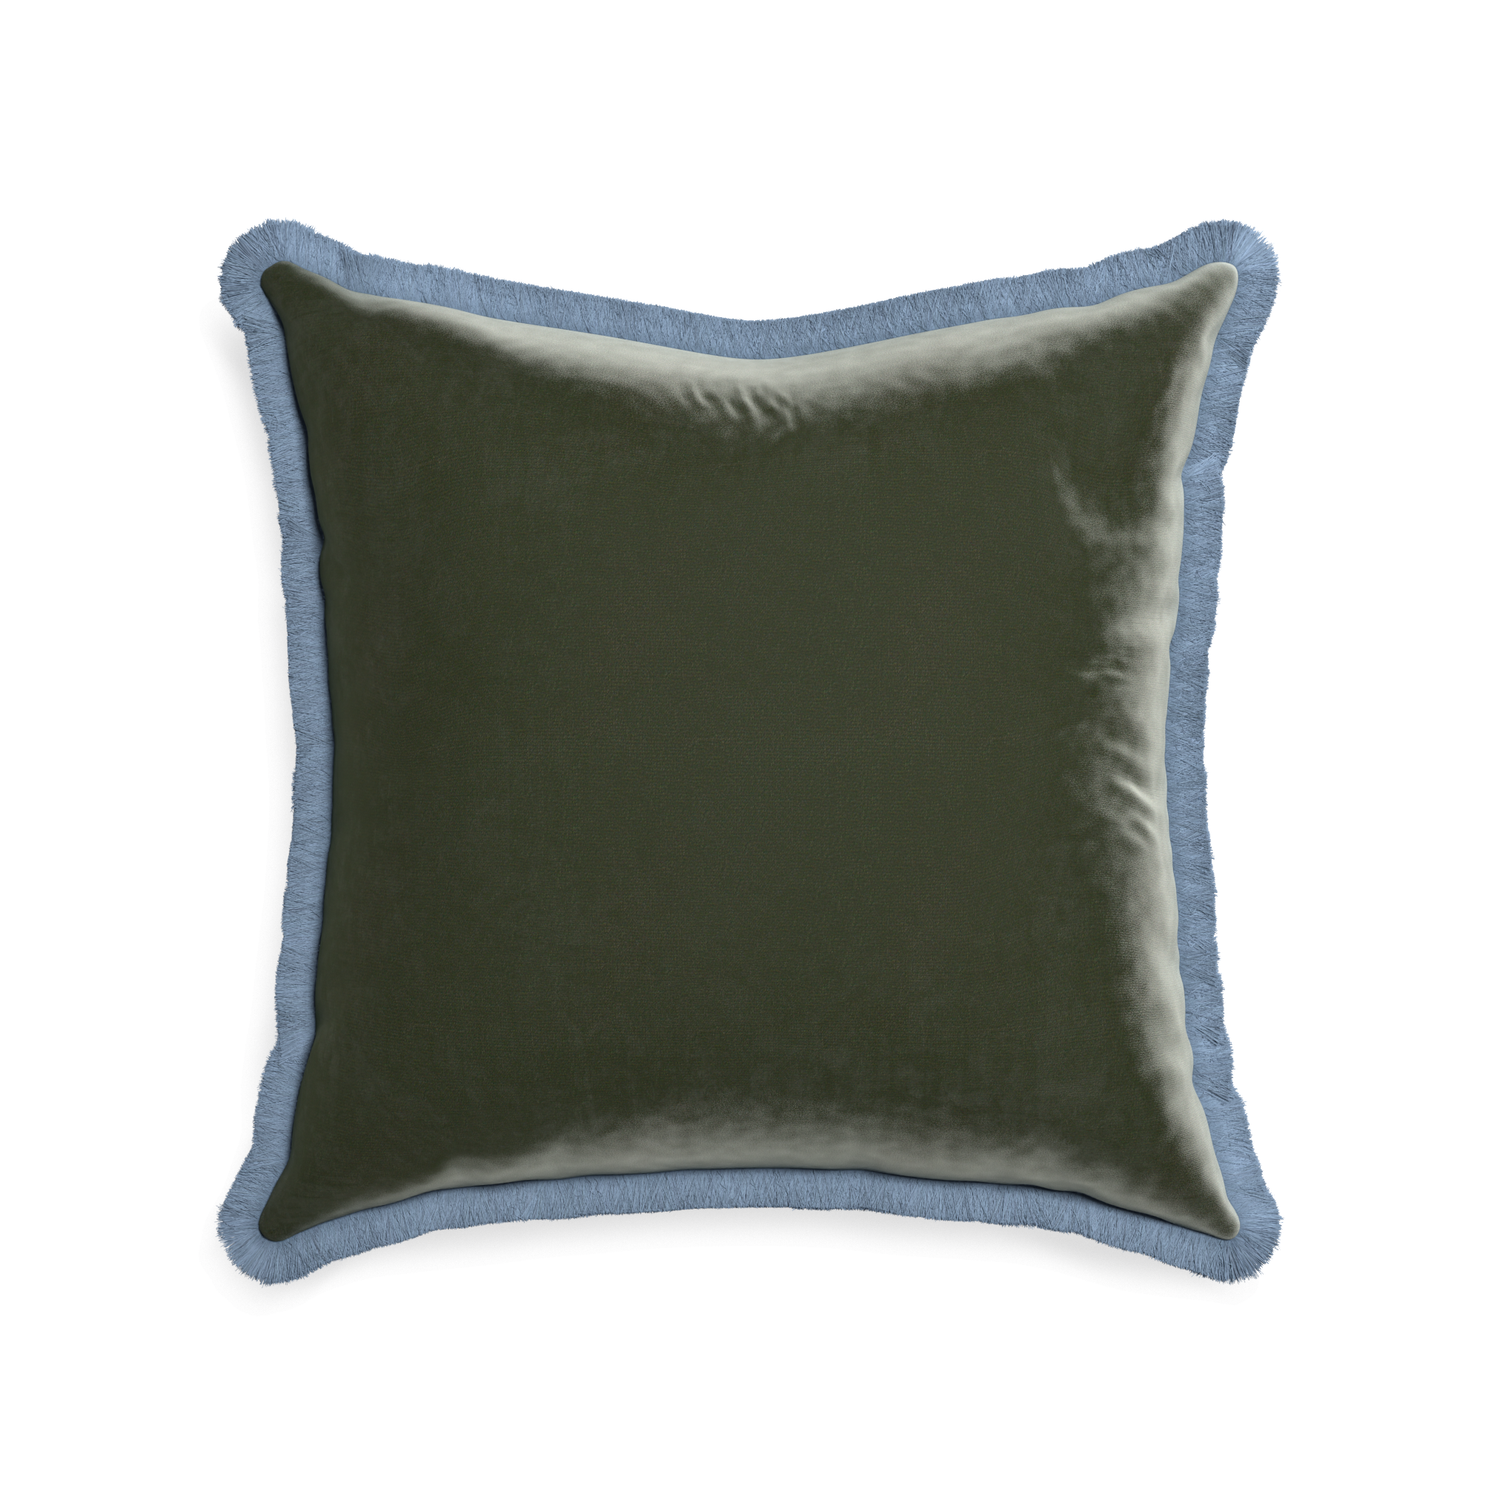 square fern green velvet pillow with sky blue fringe